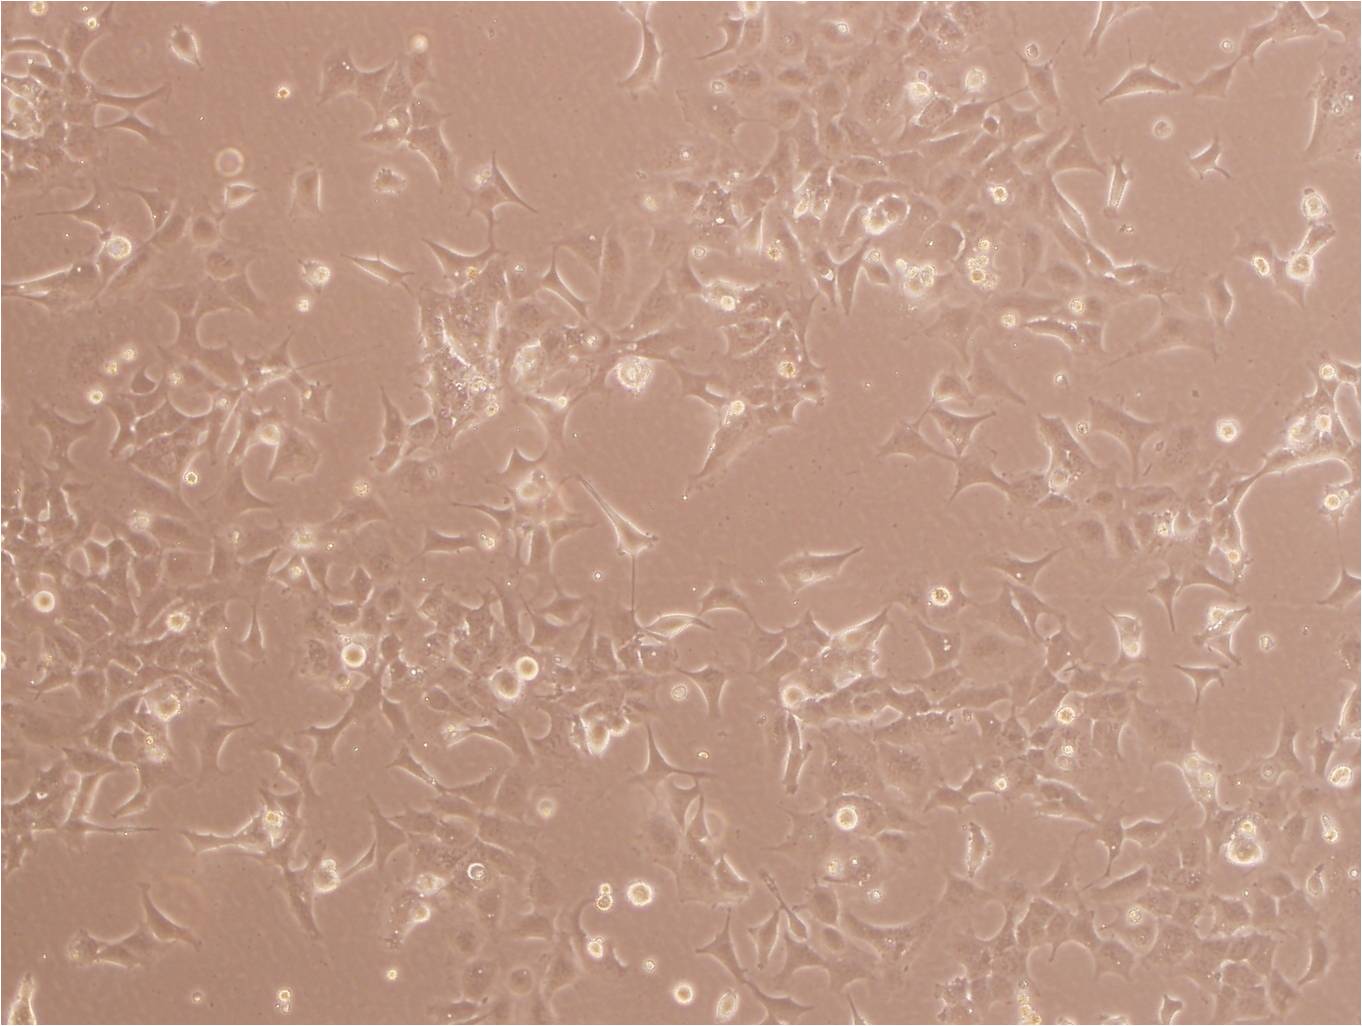 MDA-MB-435:人乳腺癌复苏细胞(提供STR鉴定图谱)